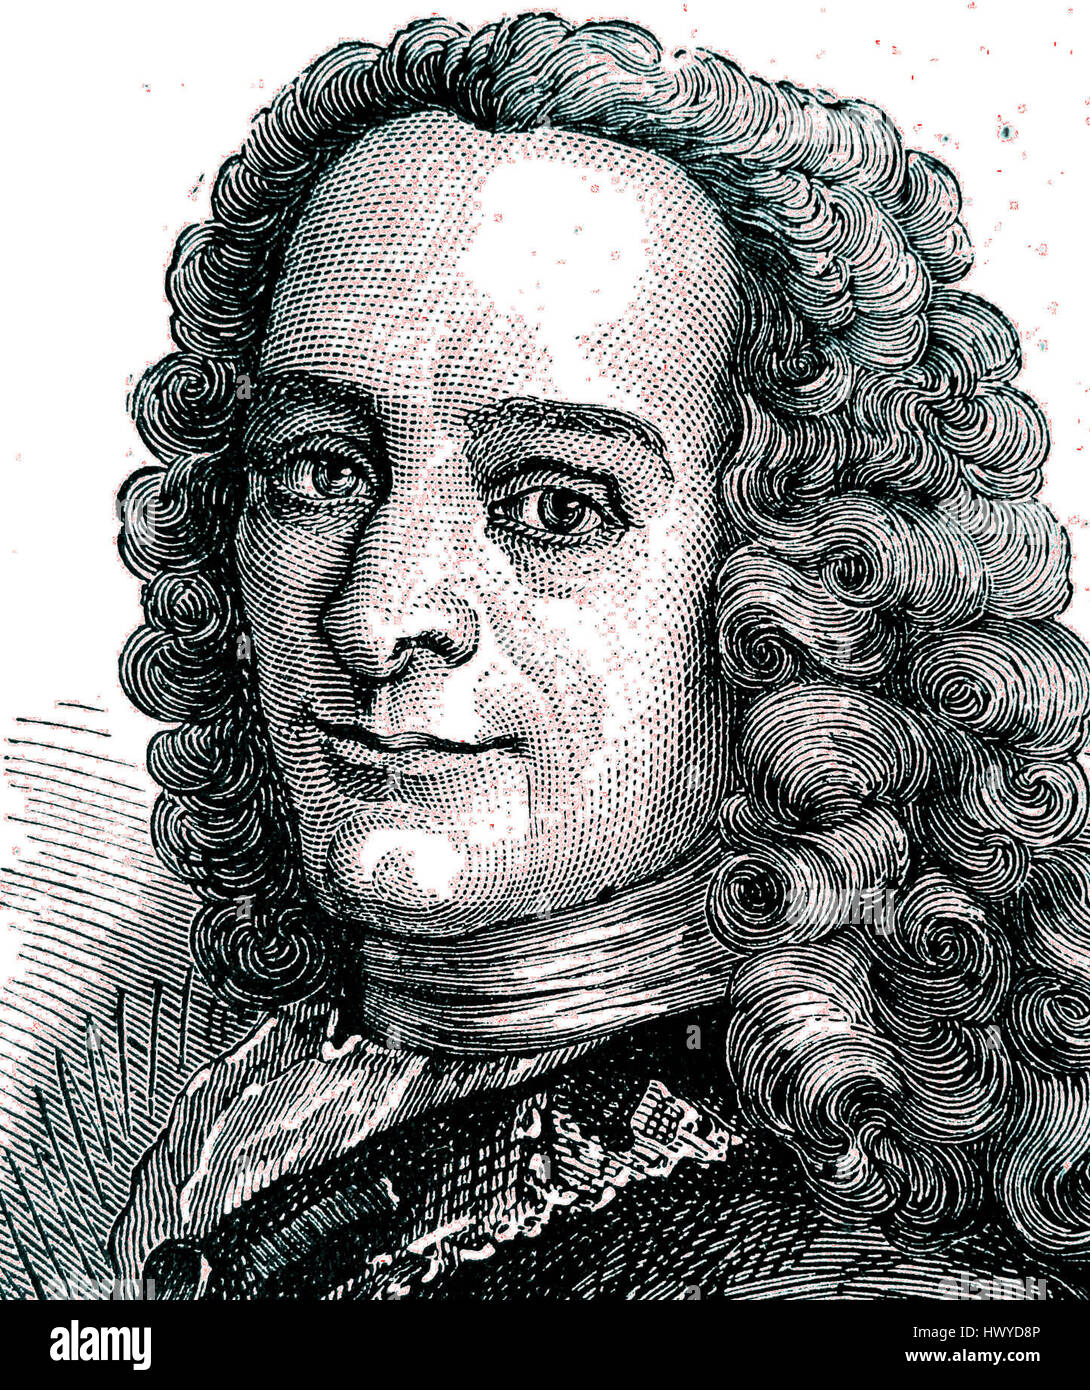 VOLTAIRE, Francois-Marie Arouet - signed manuscript to his critical work  'Le Siècle de Louis XIV' (a satire of Louis XIV's Stock Photo - Alamy